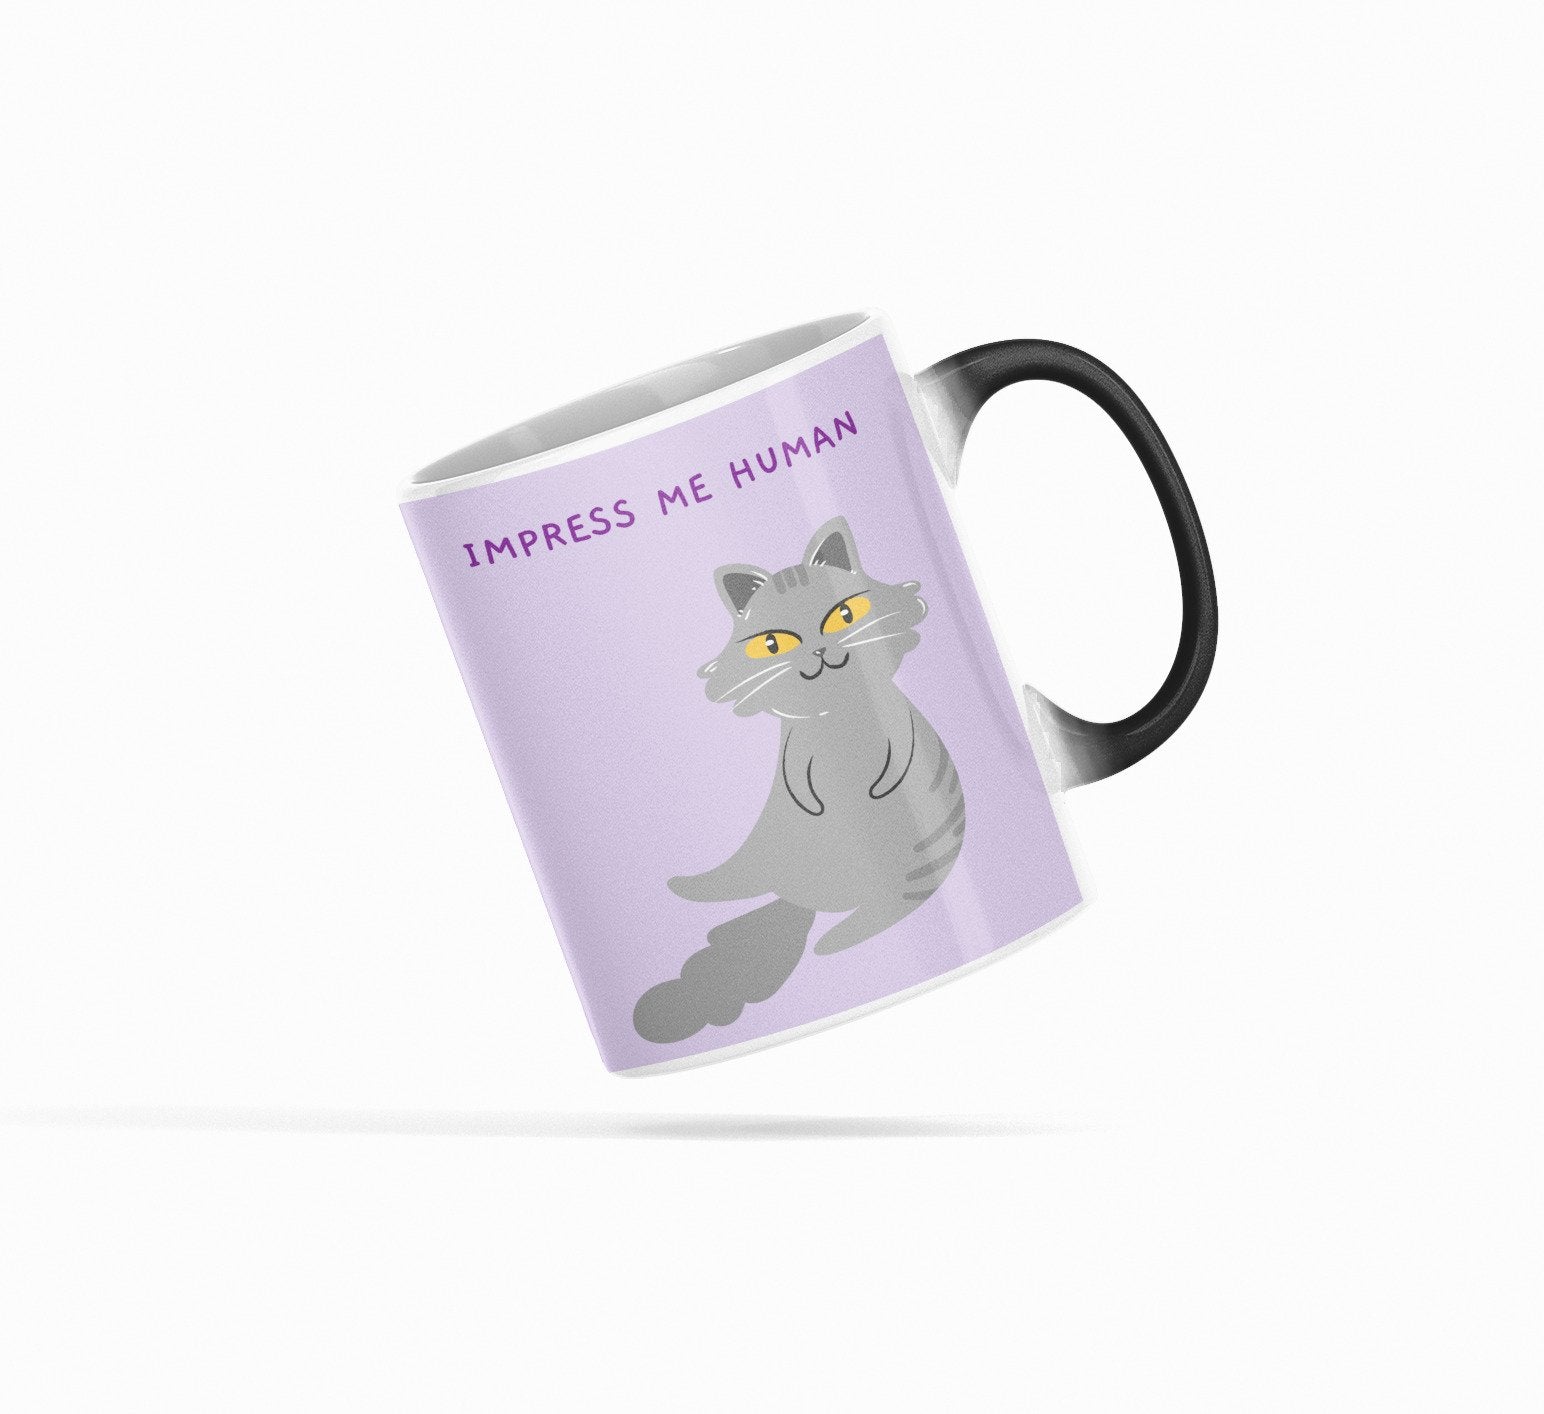 "Impress Me Human" Color Changing Cat Mug